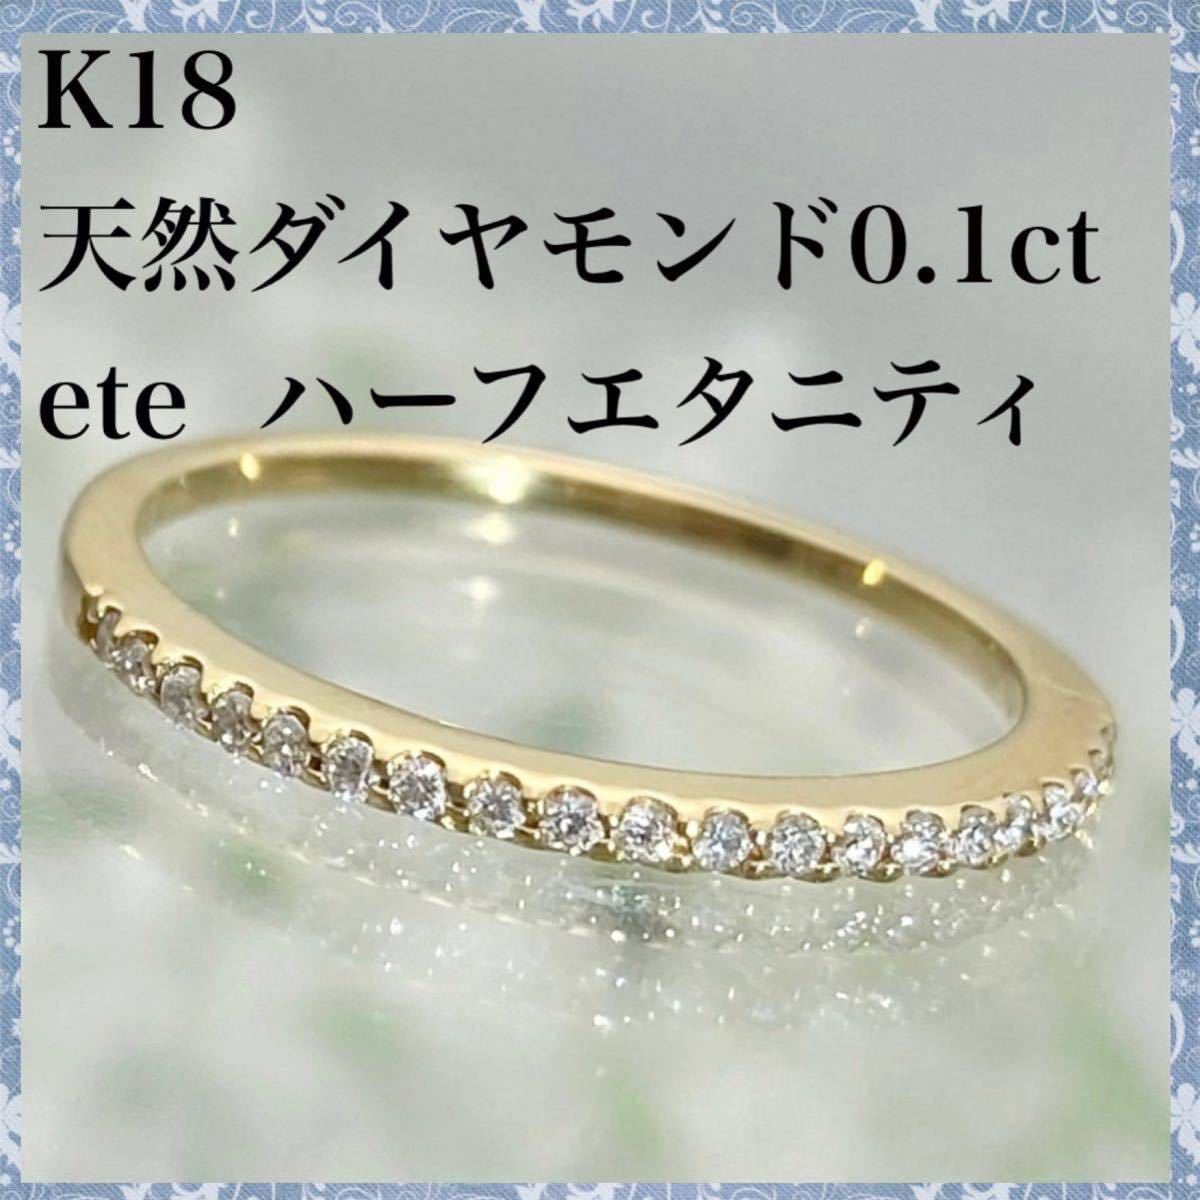 k18 天然 ダイヤモンド 0.10ct ダイヤ ハーフエタニティ リング bioval